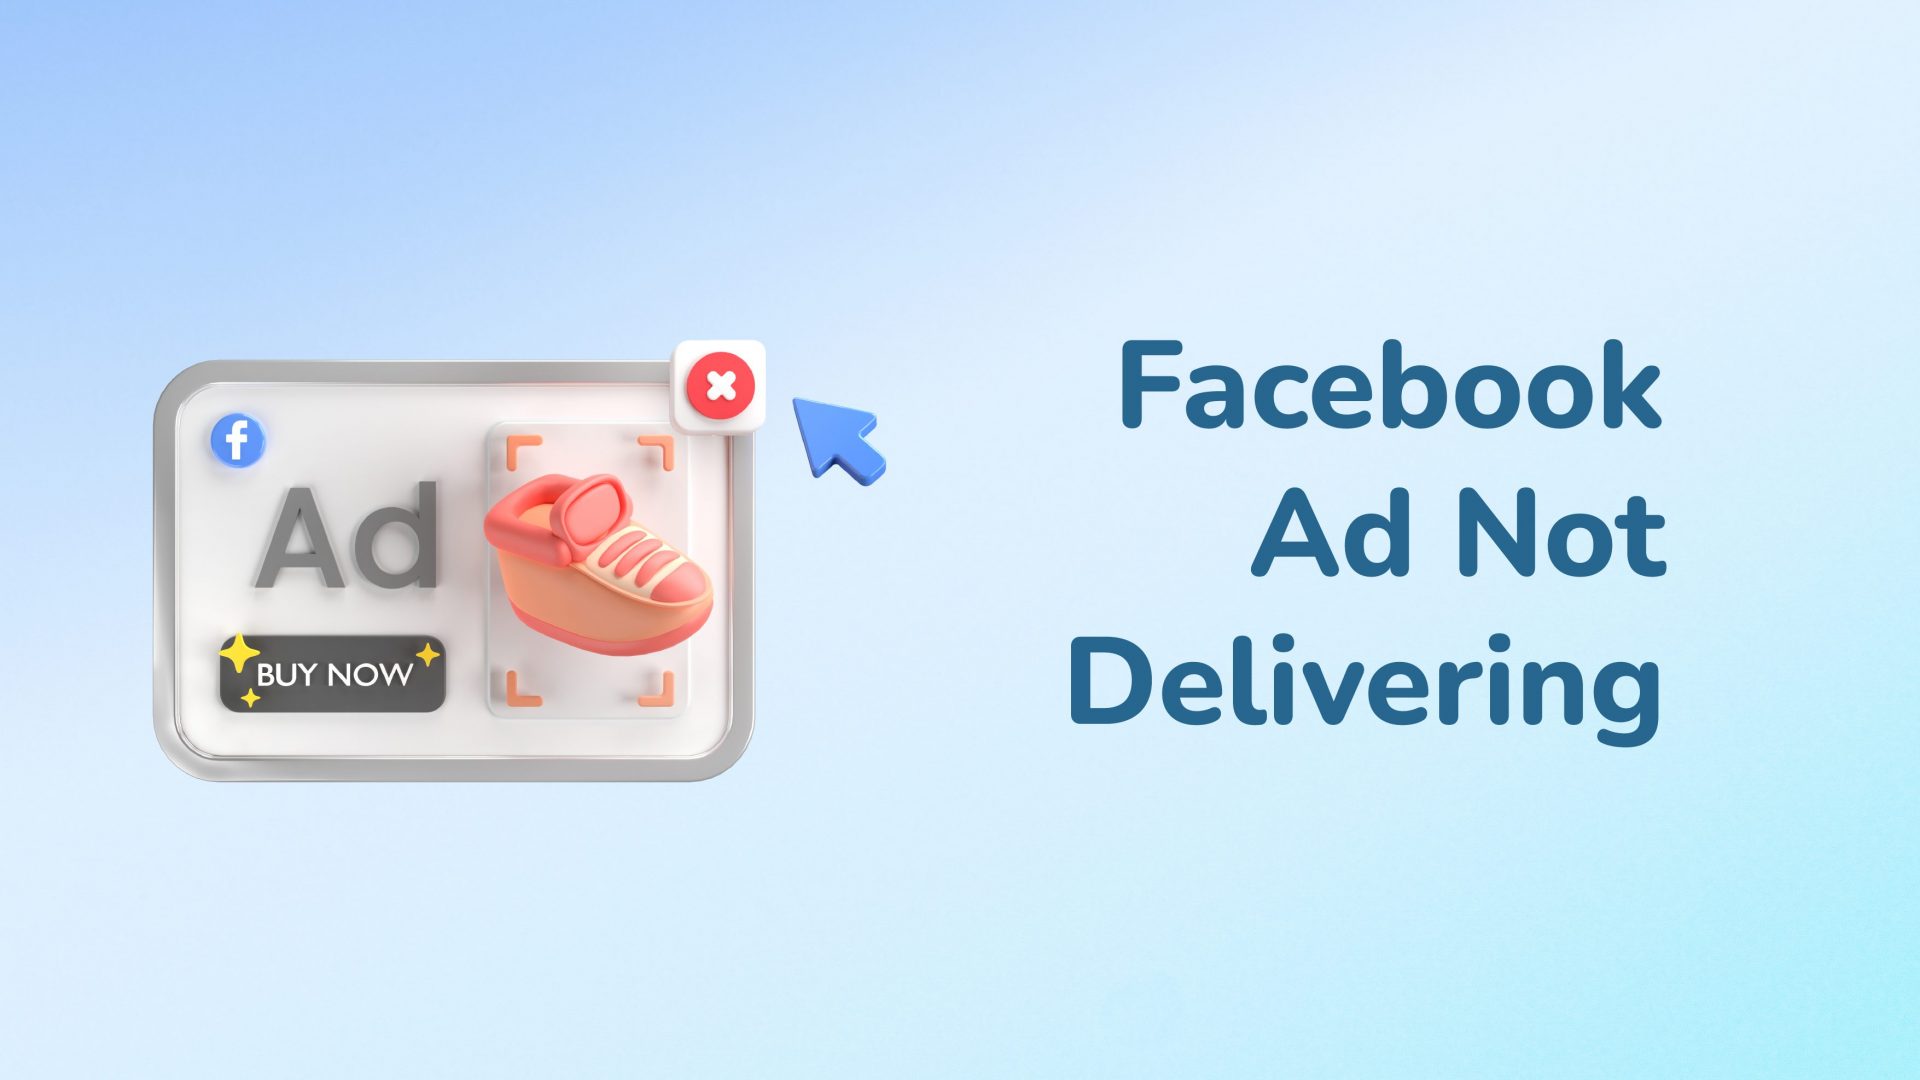 Facebook Ad Not Delivering